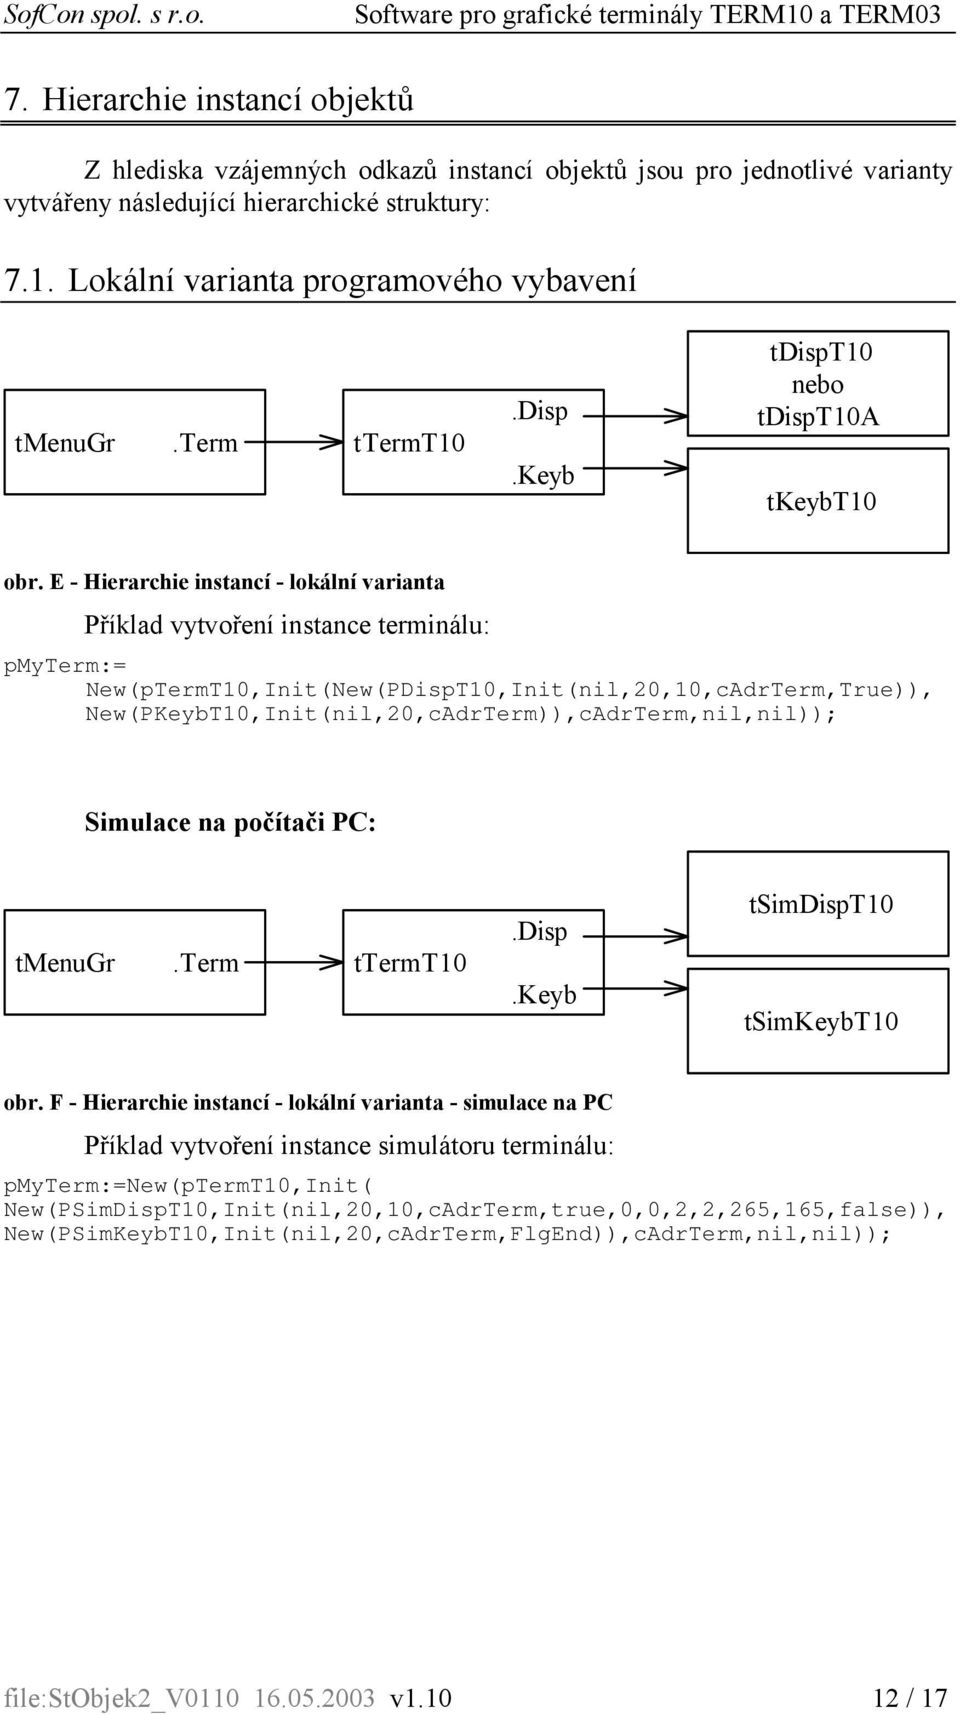 E - Hierarchie instancí - lokální varianta Příklad vytvoření instance terminálu: pmyterm:= New(pTermT10,Init(New(PDispT10,Init(nil,20,10,cAdrTerm,True)),